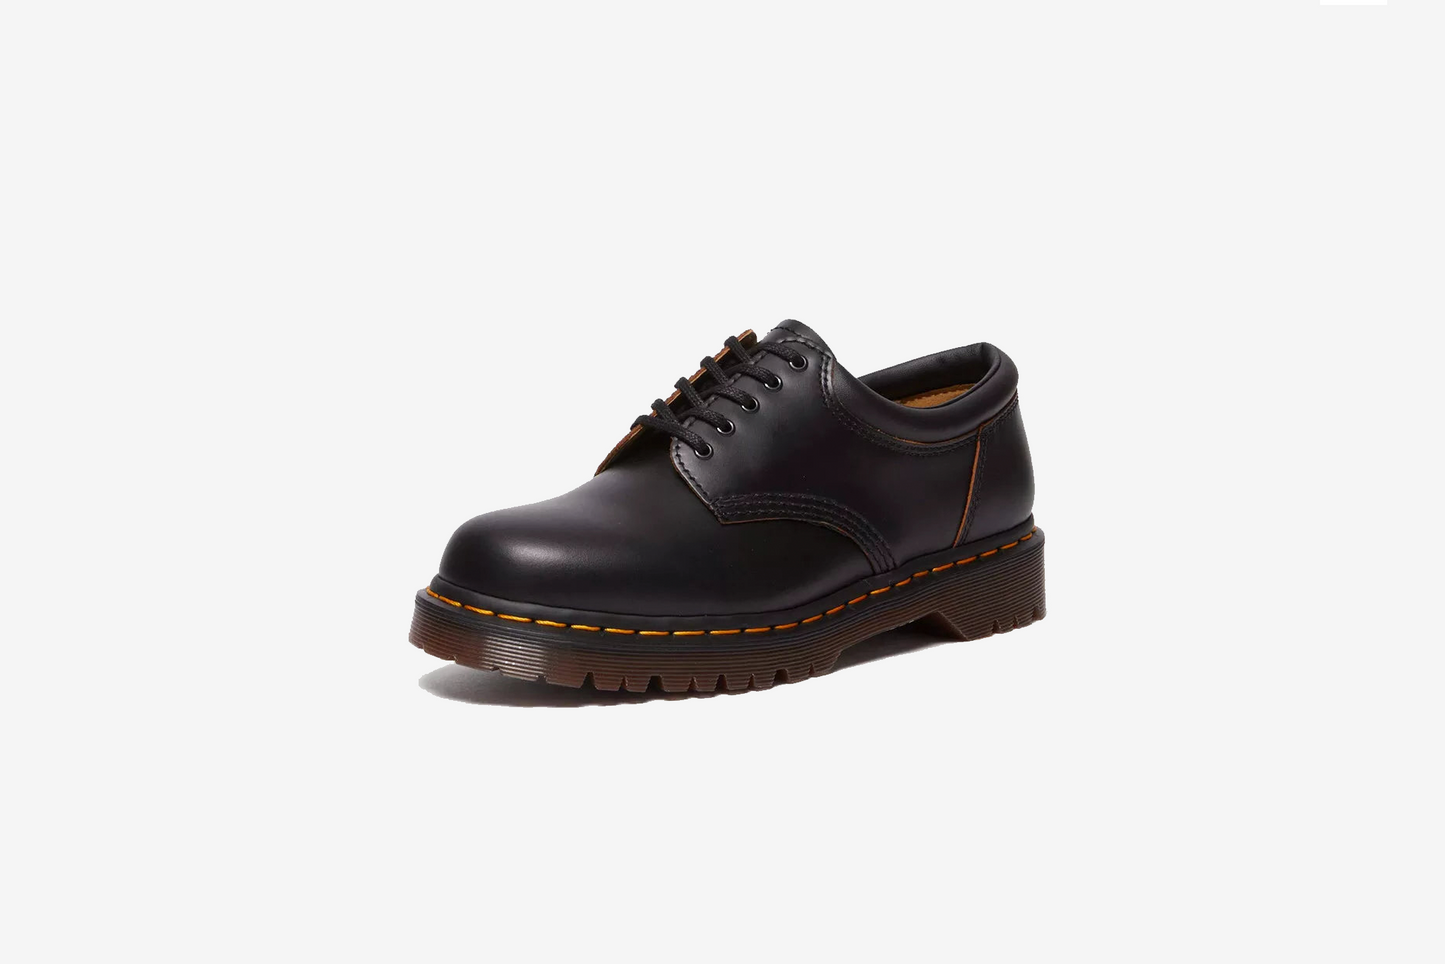 Dr. Martens "8053 Vintage Smooth Leather Oxford Shoes" M - Black Vintage Smooth